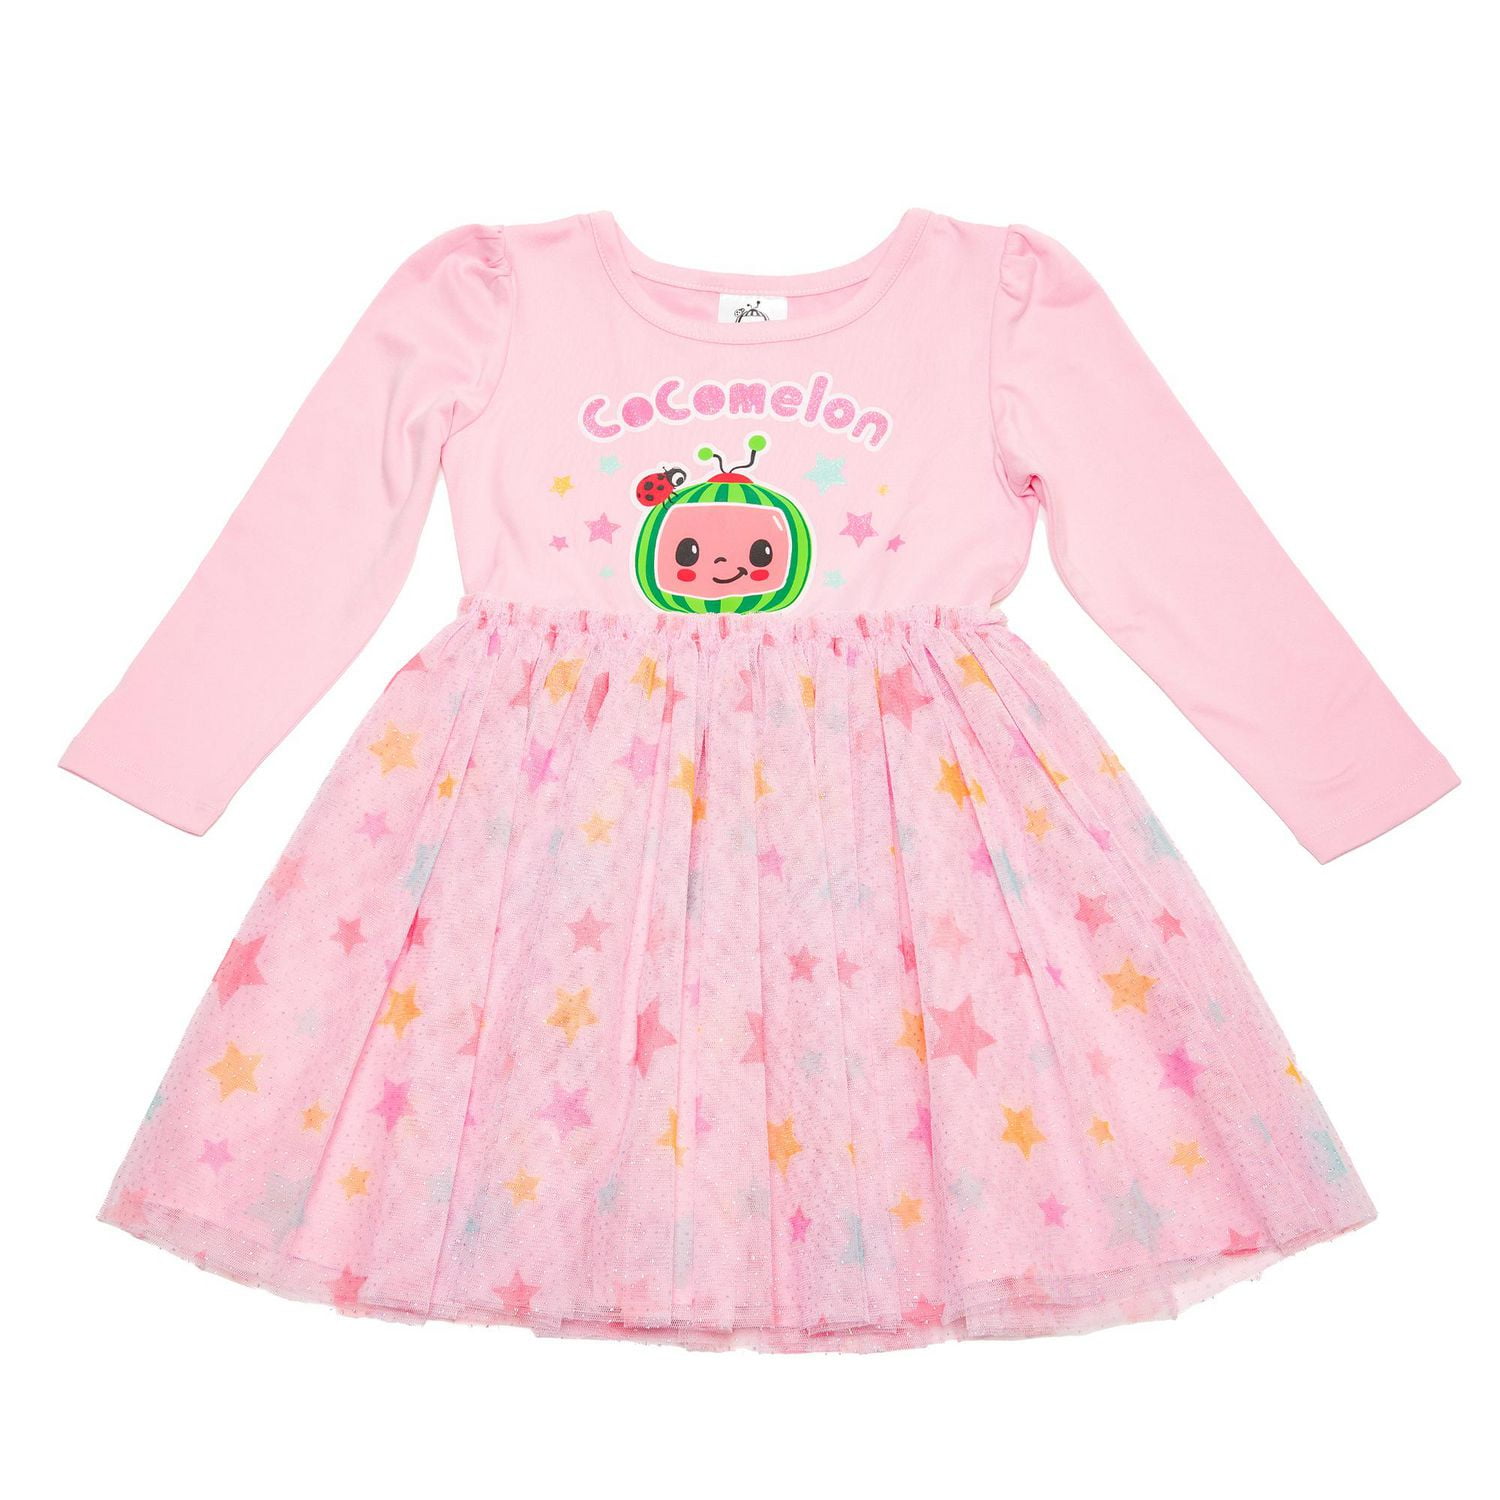 Paw Patrol Toddler Girl`s Dress 